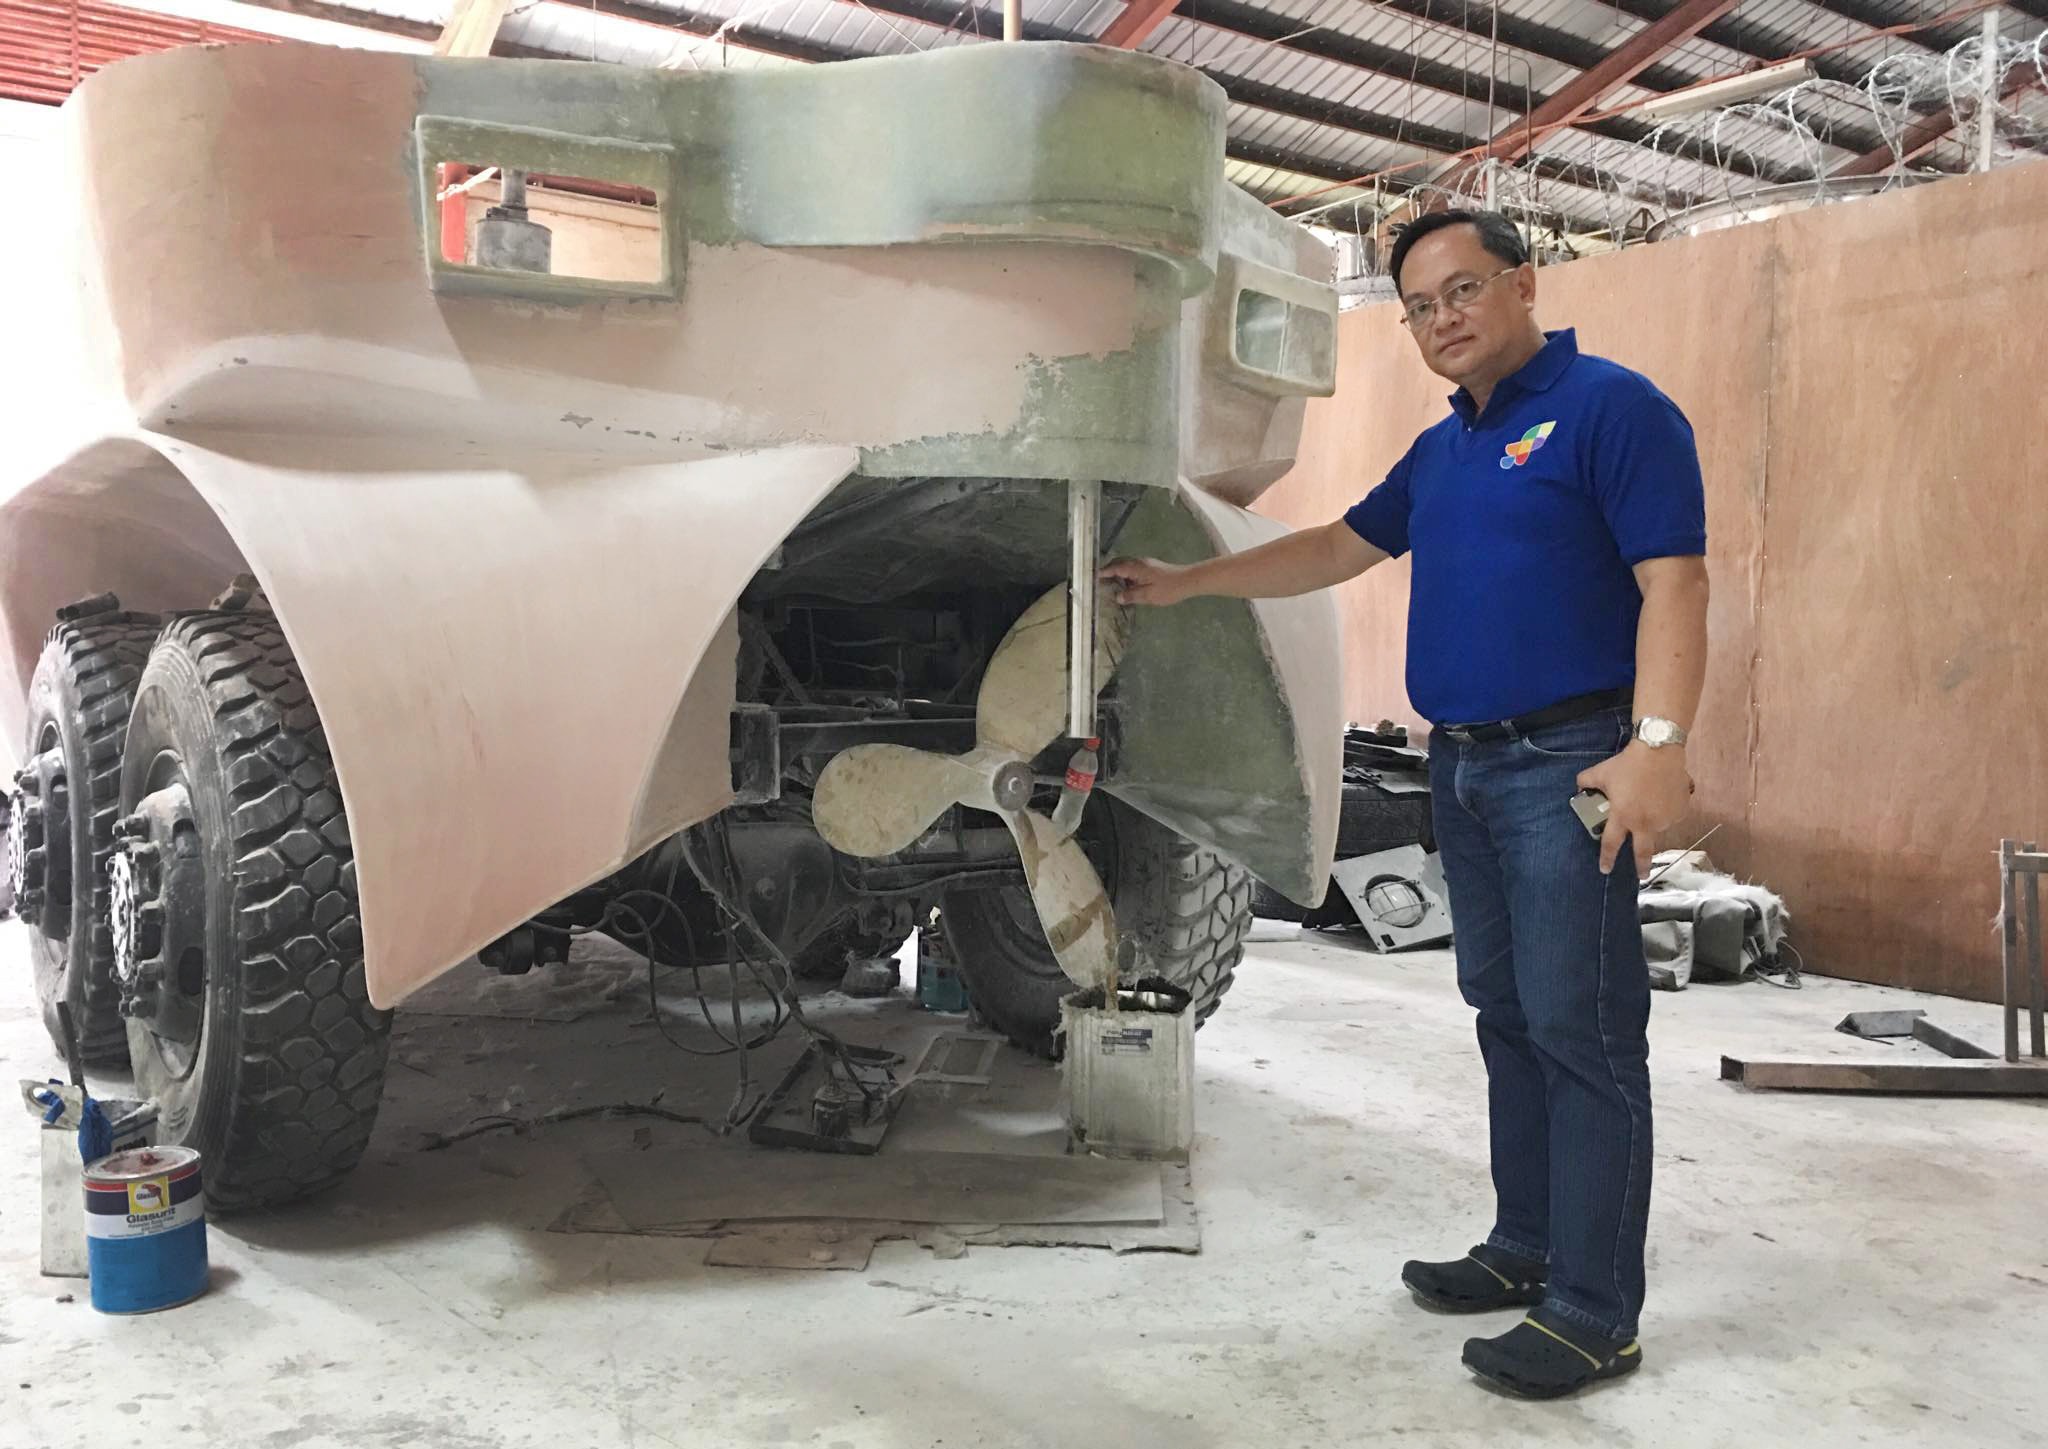 Julius Caesar V. Sicat, director regional del Departamento de Ciencia y Tecnología de Filipinas, junto a un prototipo de vehículo anfibio de rescate diseñado para salvar vidas en caso de grandes inundaciones. Foto cortesía de Ryan de Lara.